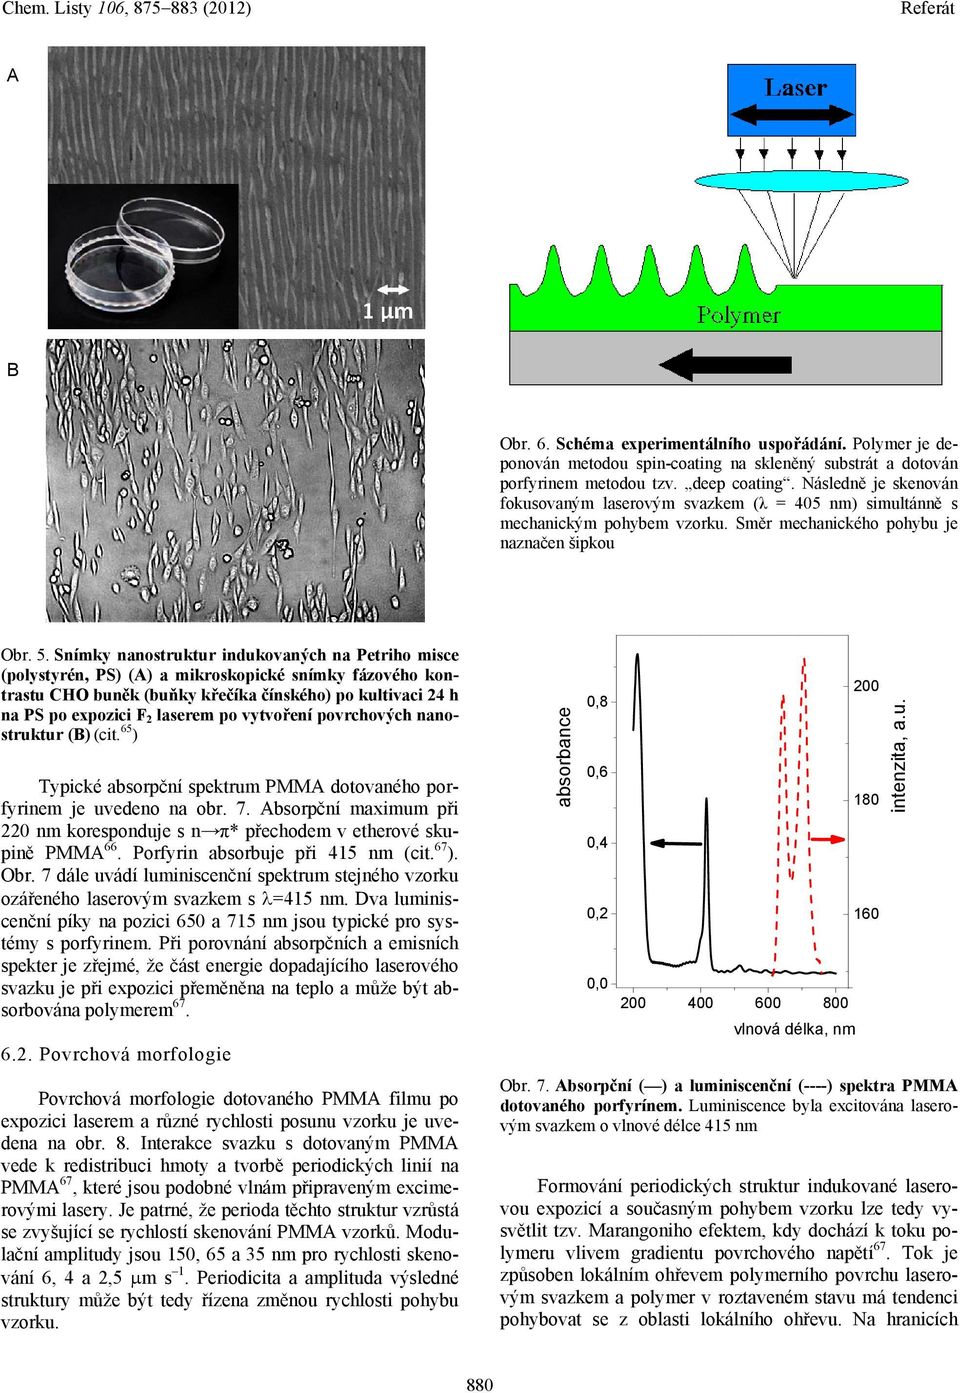 Snímky nanostruktur indukovaných na Petriho misce (polystyrén, PS) (A) a mikroskopické snímky fázového kontrastu CHO buněk (buňky křečíka čínského) po kultivaci 24 h na PS po expozici F 2 laserem po